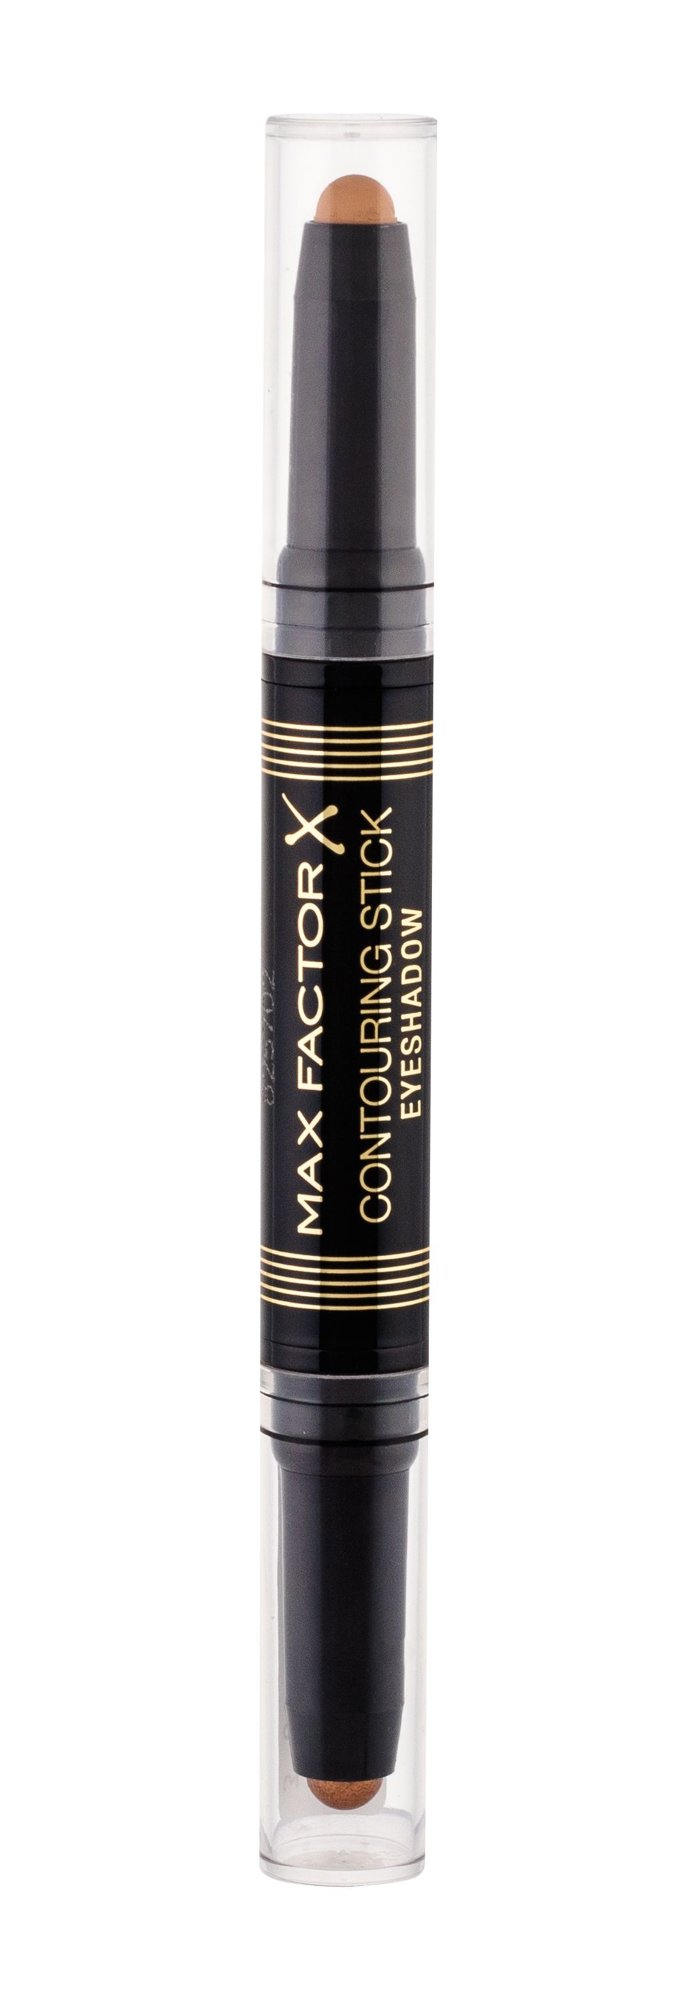 Max Factor Contouring Stick Eyeshadow šešėliai